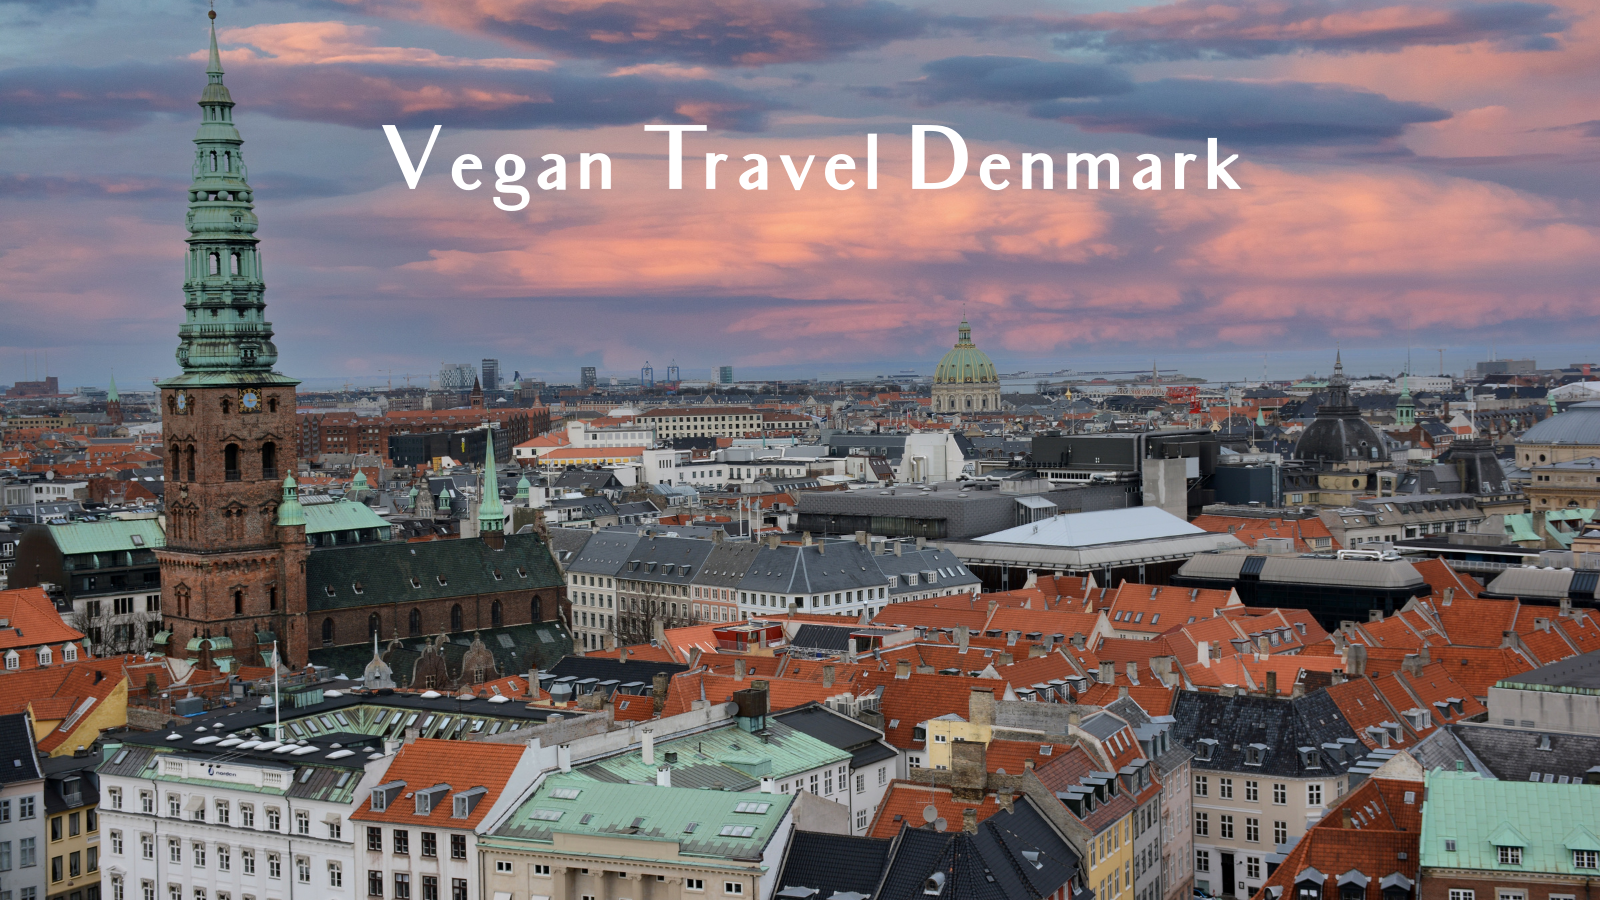 Vegan Travel Denmark